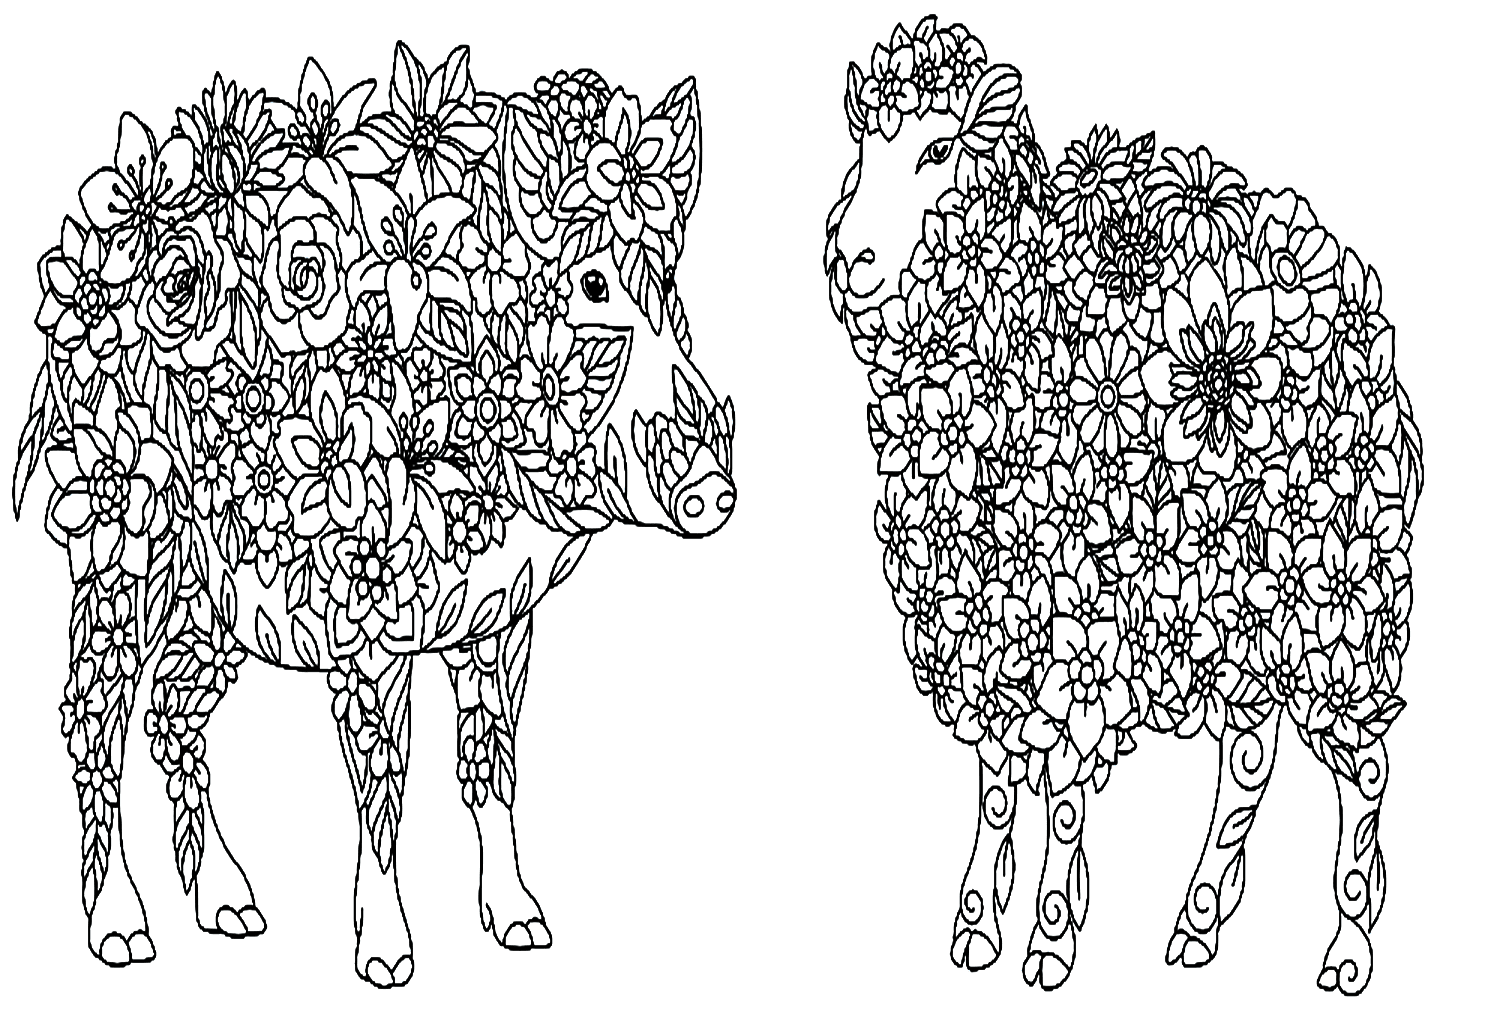 Porco e Cordeiro from Cordeiro